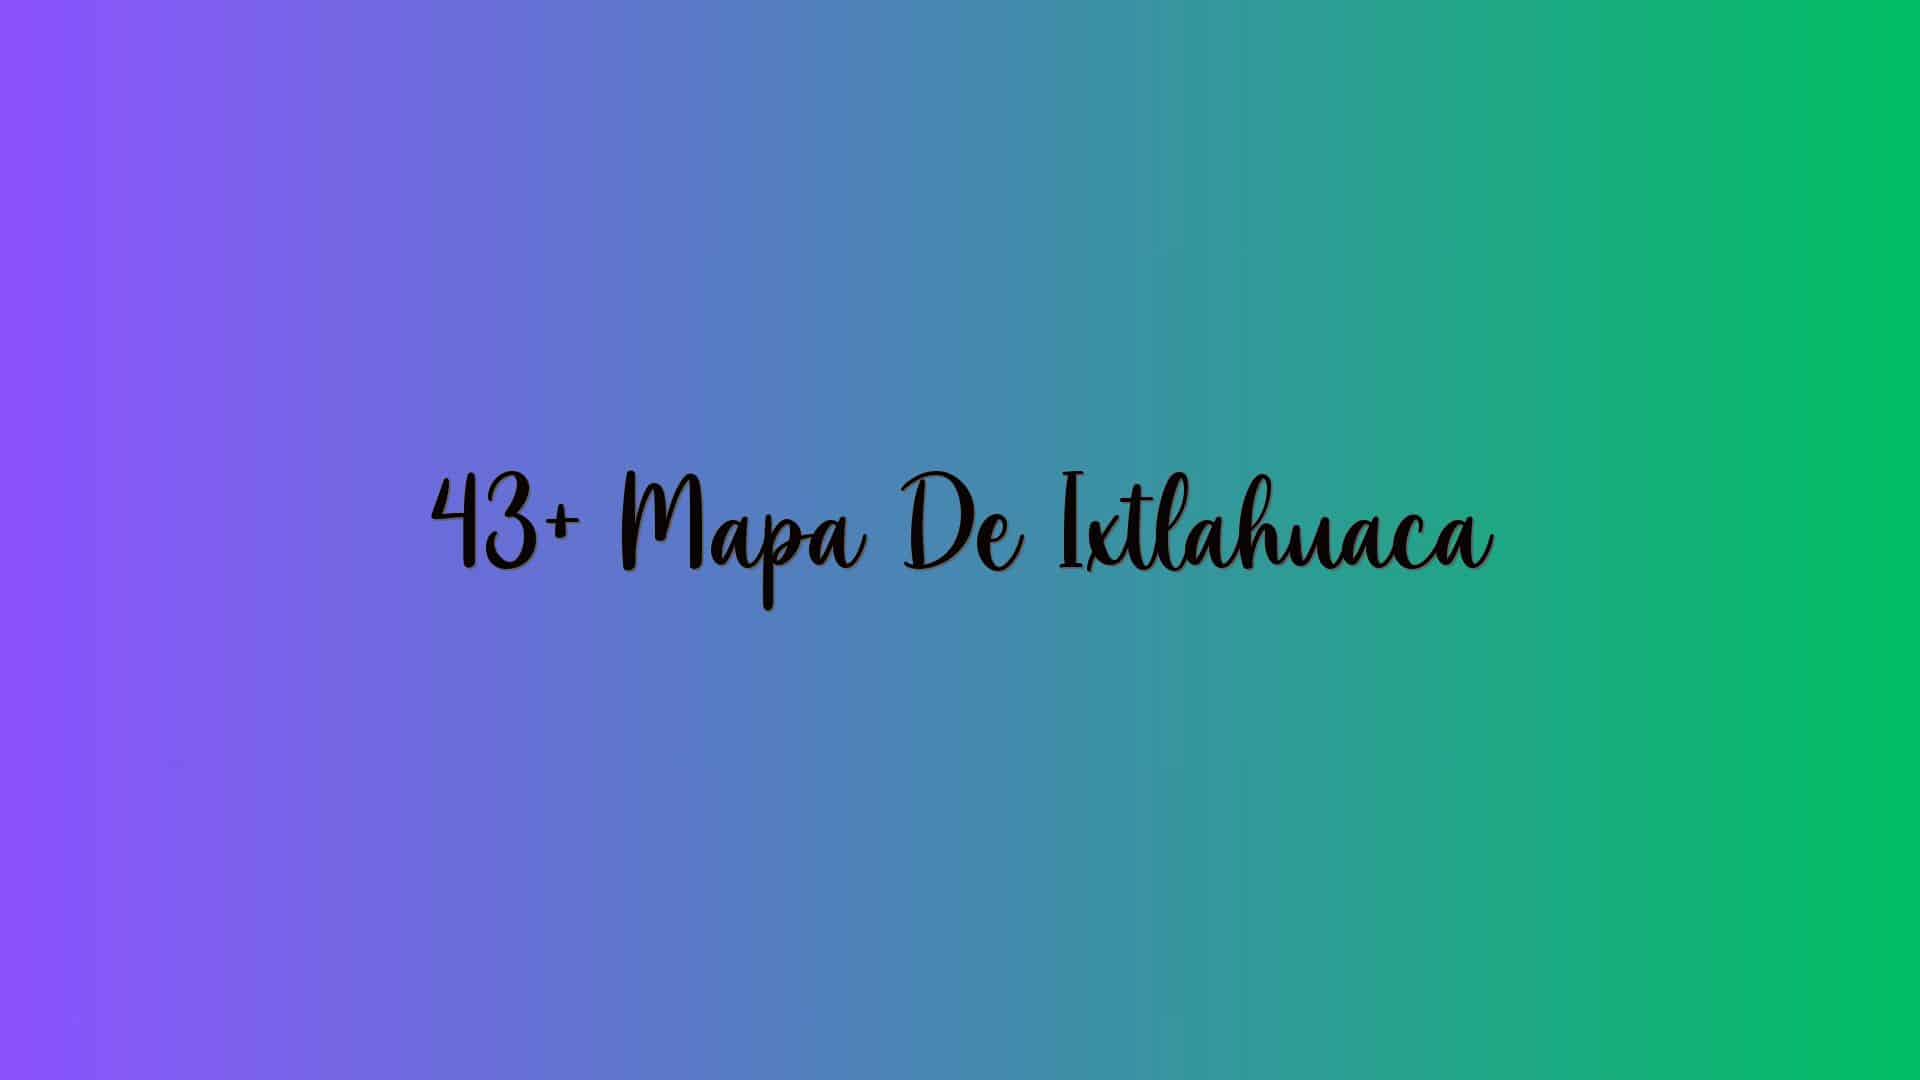 43+ Mapa De Ixtlahuaca